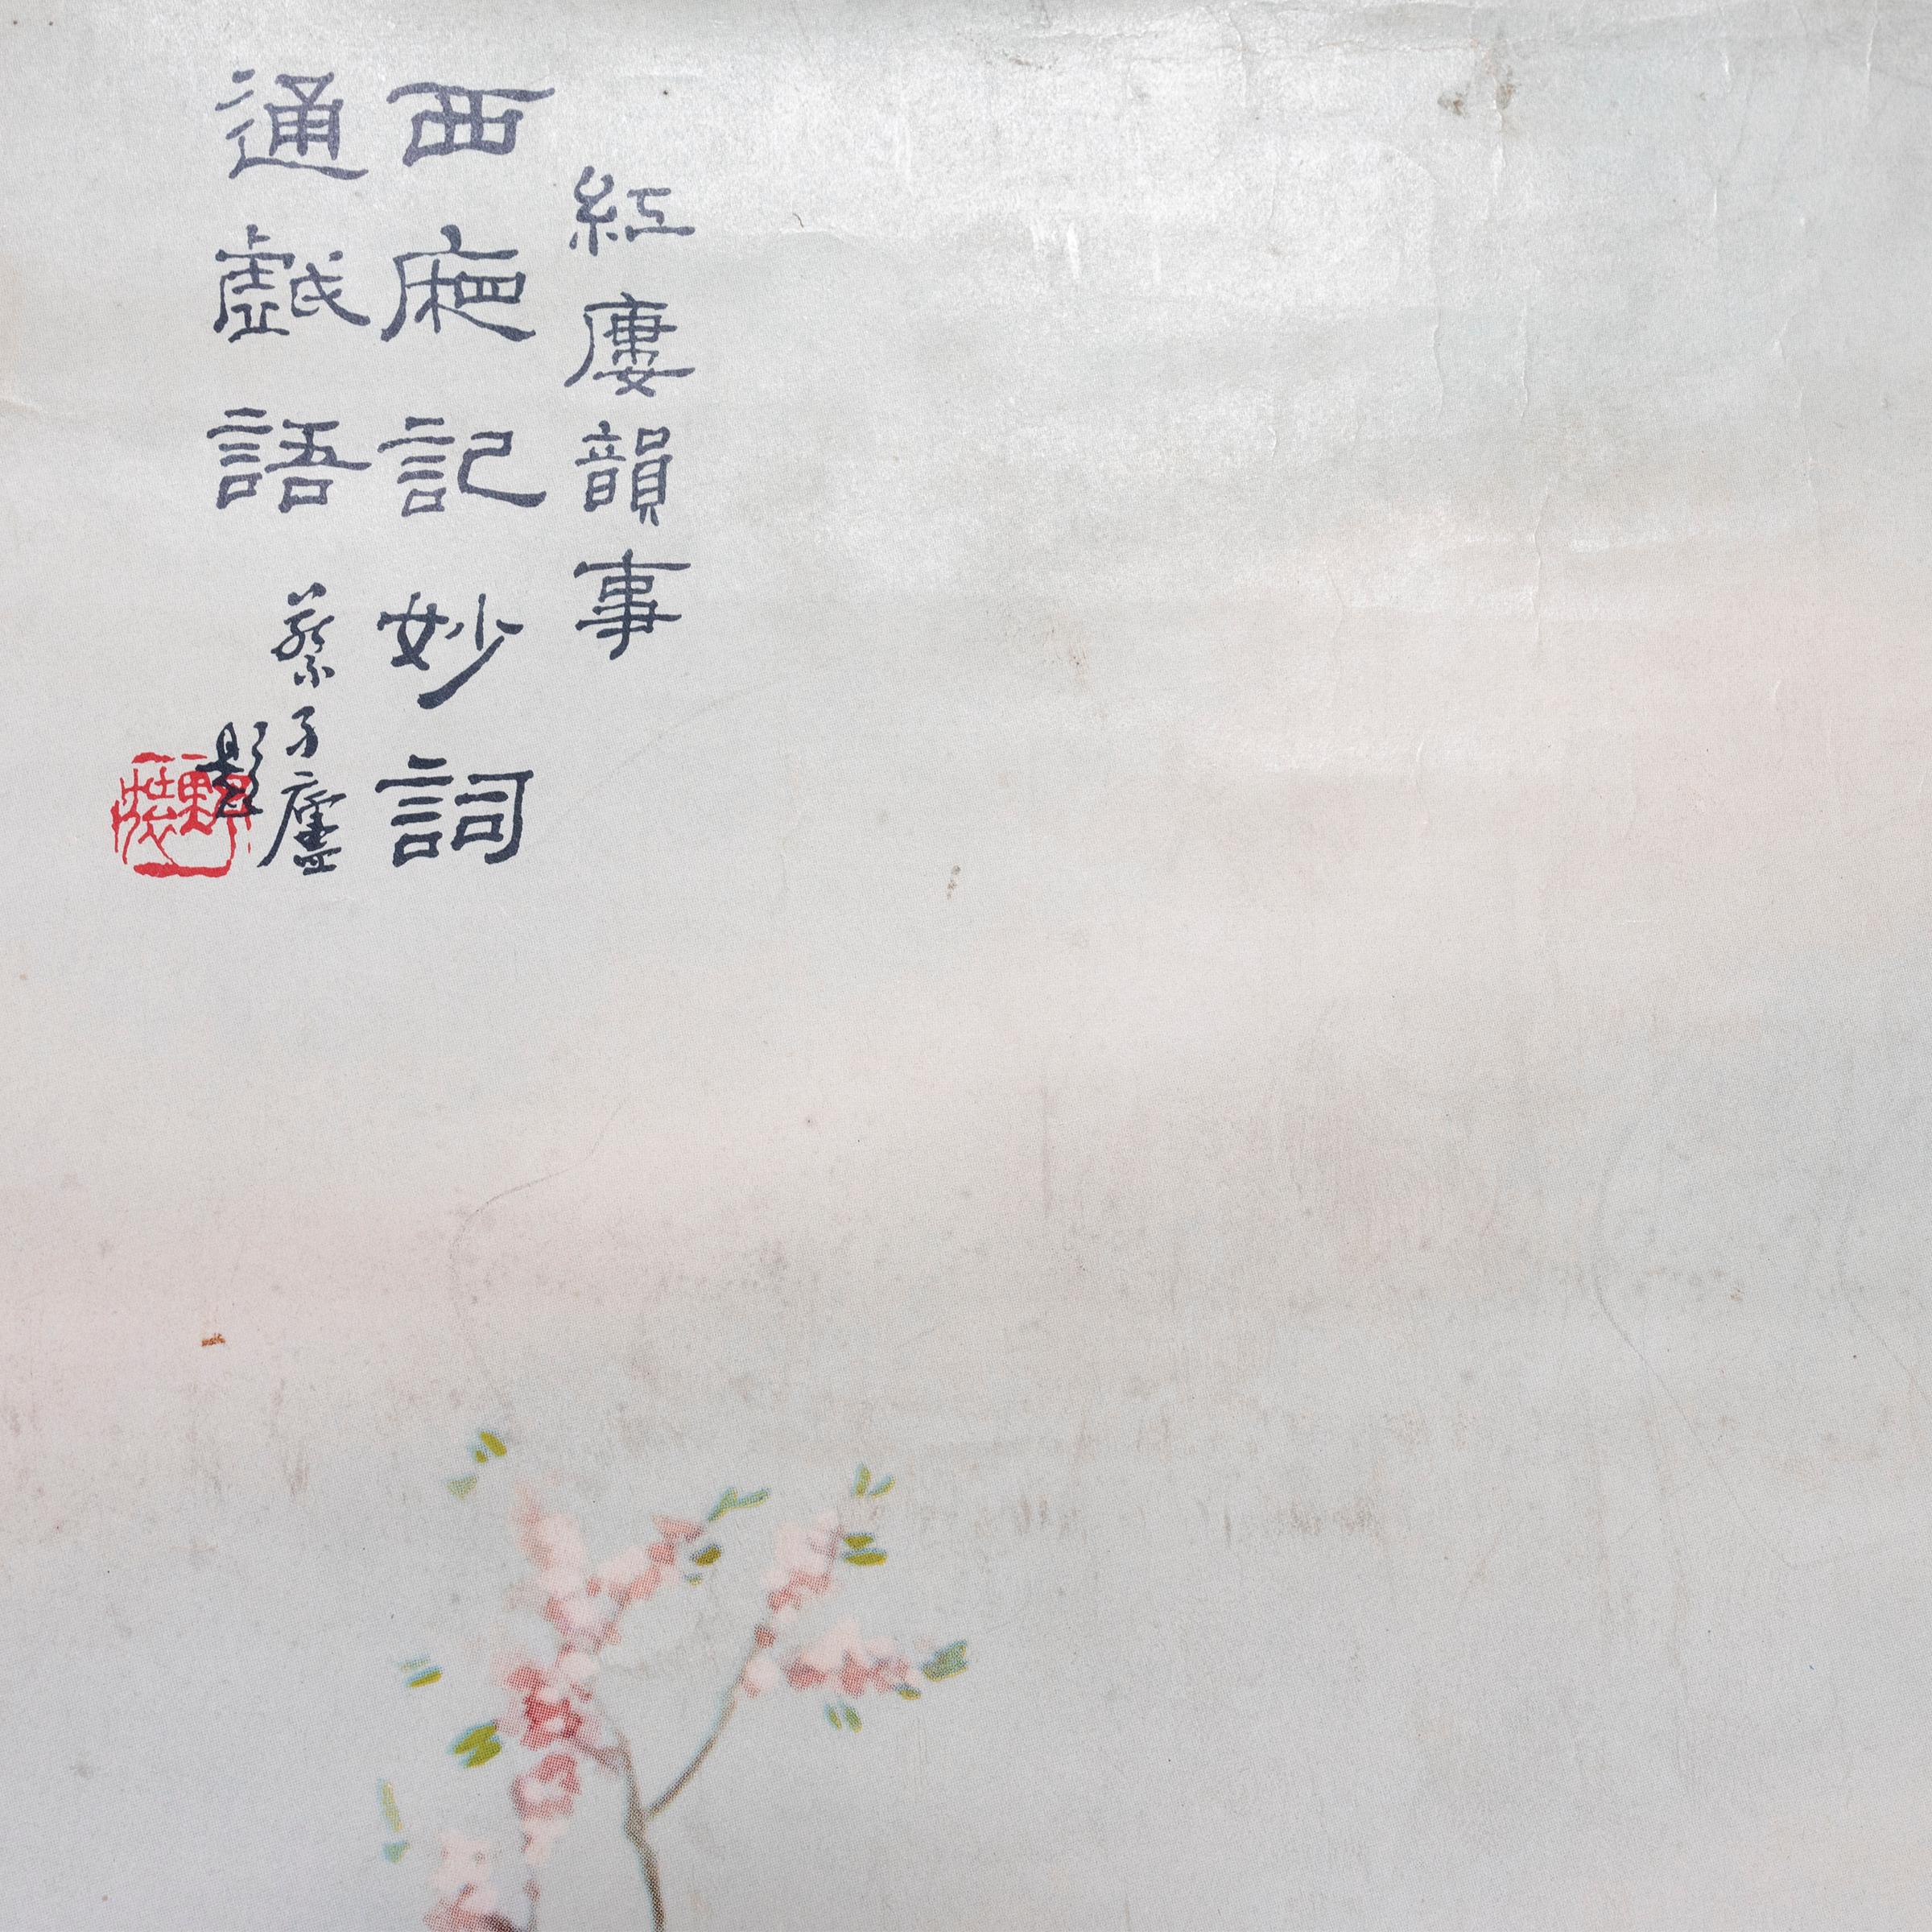 Dieses Werbeplakat für die Firma Gold Bar Cigarettes aus den 1930er Jahren zeigt eine bekannte chinesische Opernszene. Es verbindet die Detailgenauigkeit der traditionellen chinesischen Malerei mit dem Handwerk der Farblithografie. Diese von der